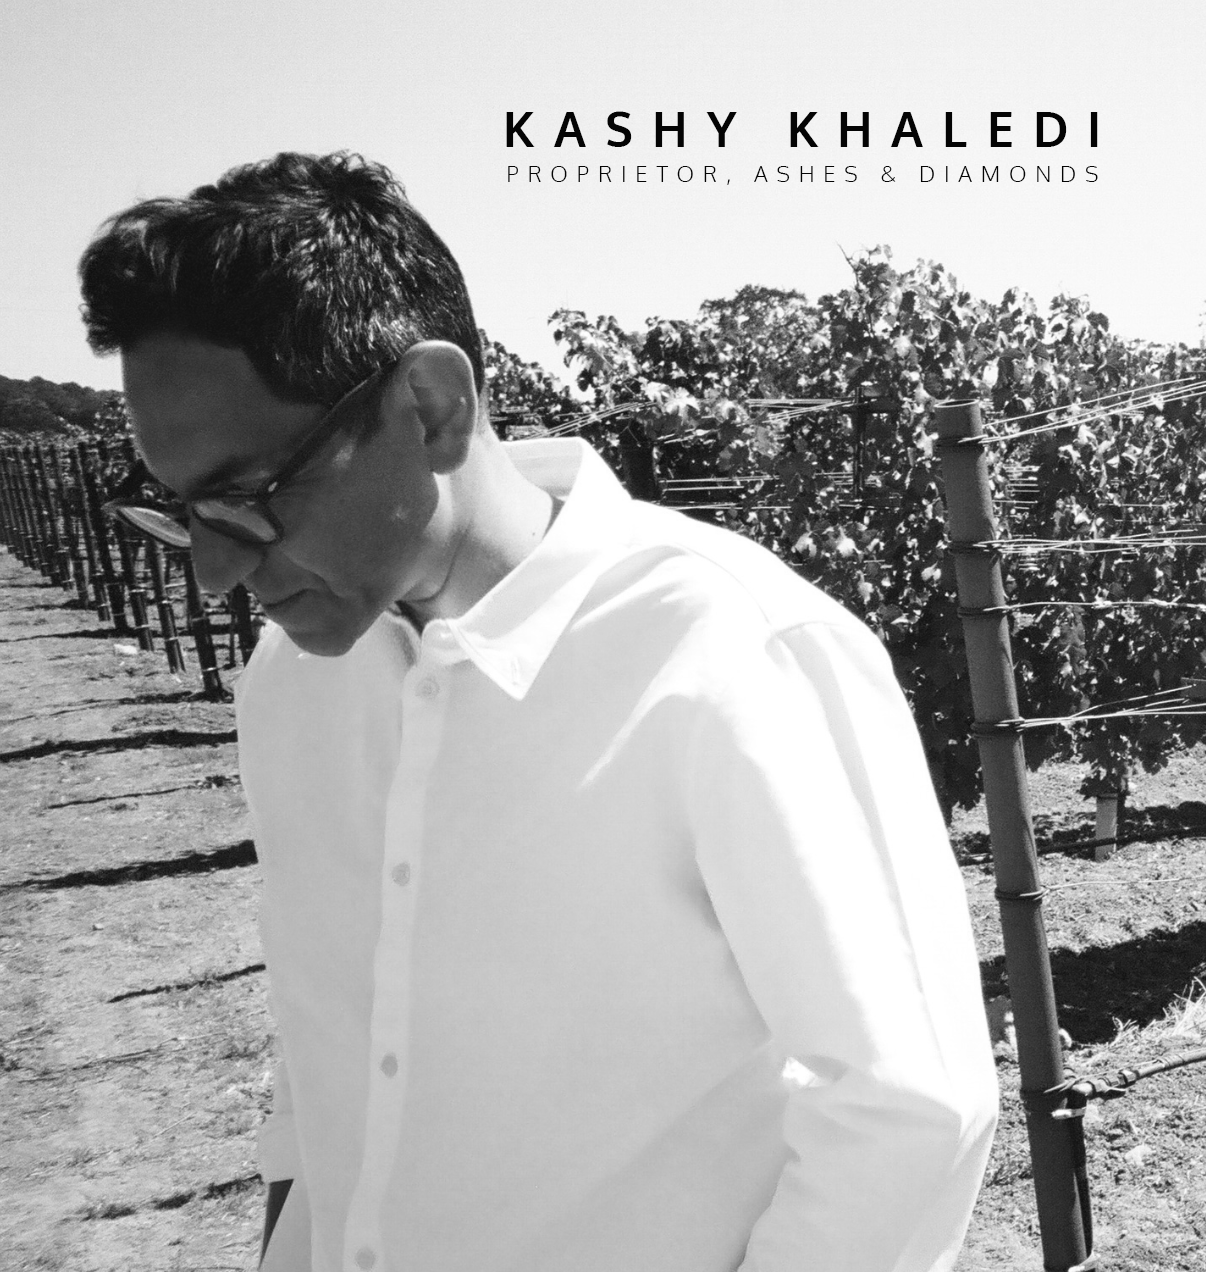 KASHY KHALEDI